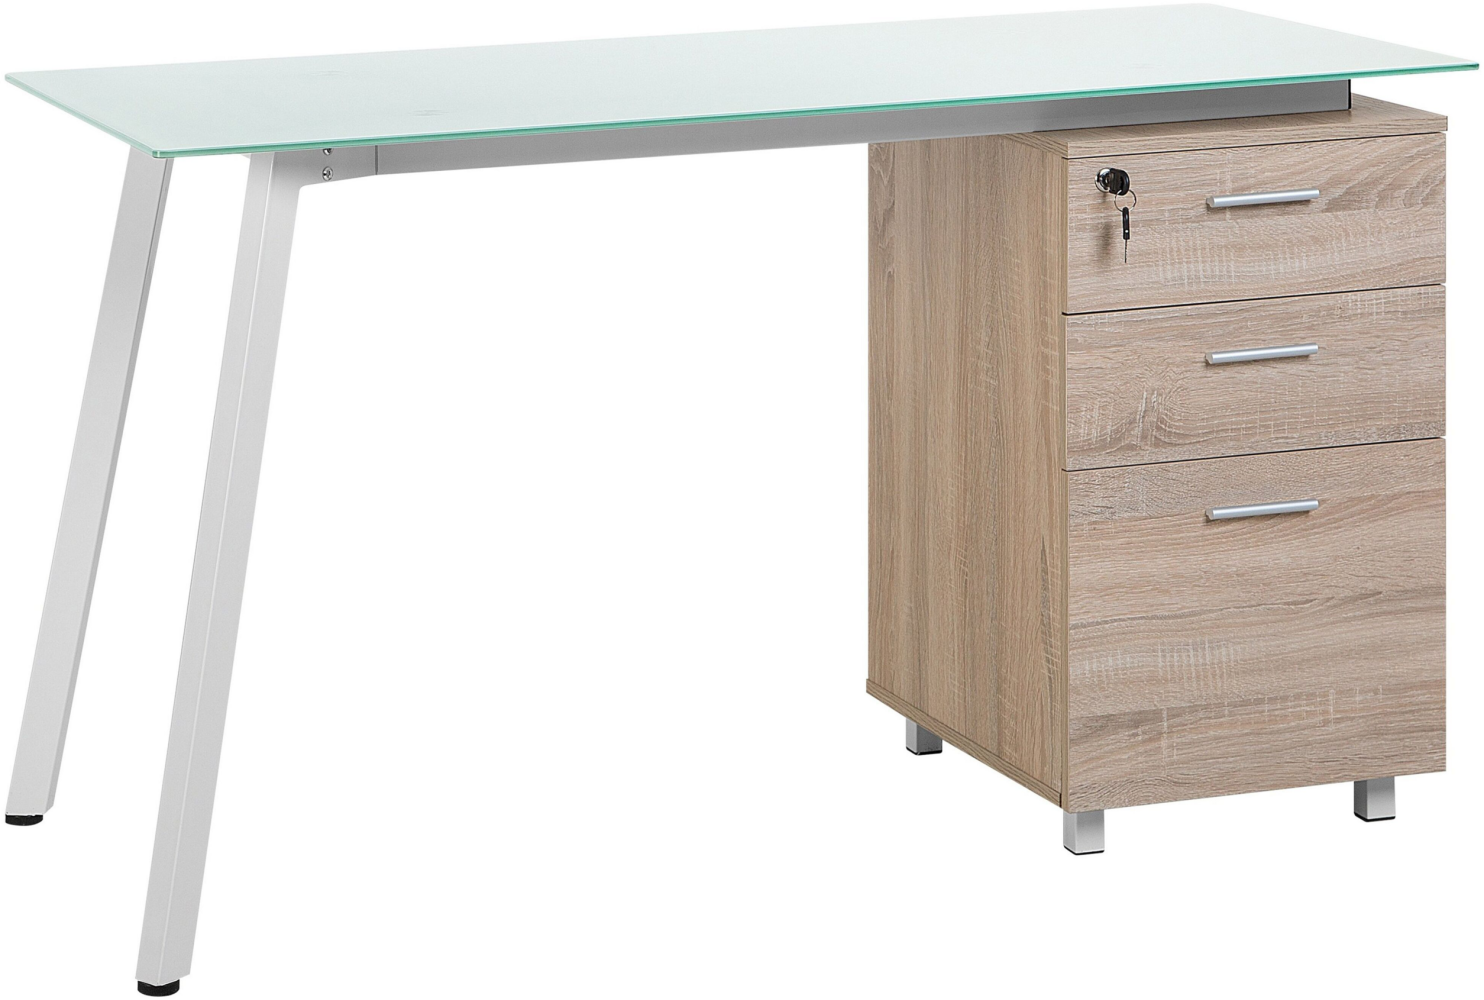 Schreibtisch weiß / heller Holzfarbton 130 x 60 cm 3 Schubladen MONTEVIDEO Bild 1